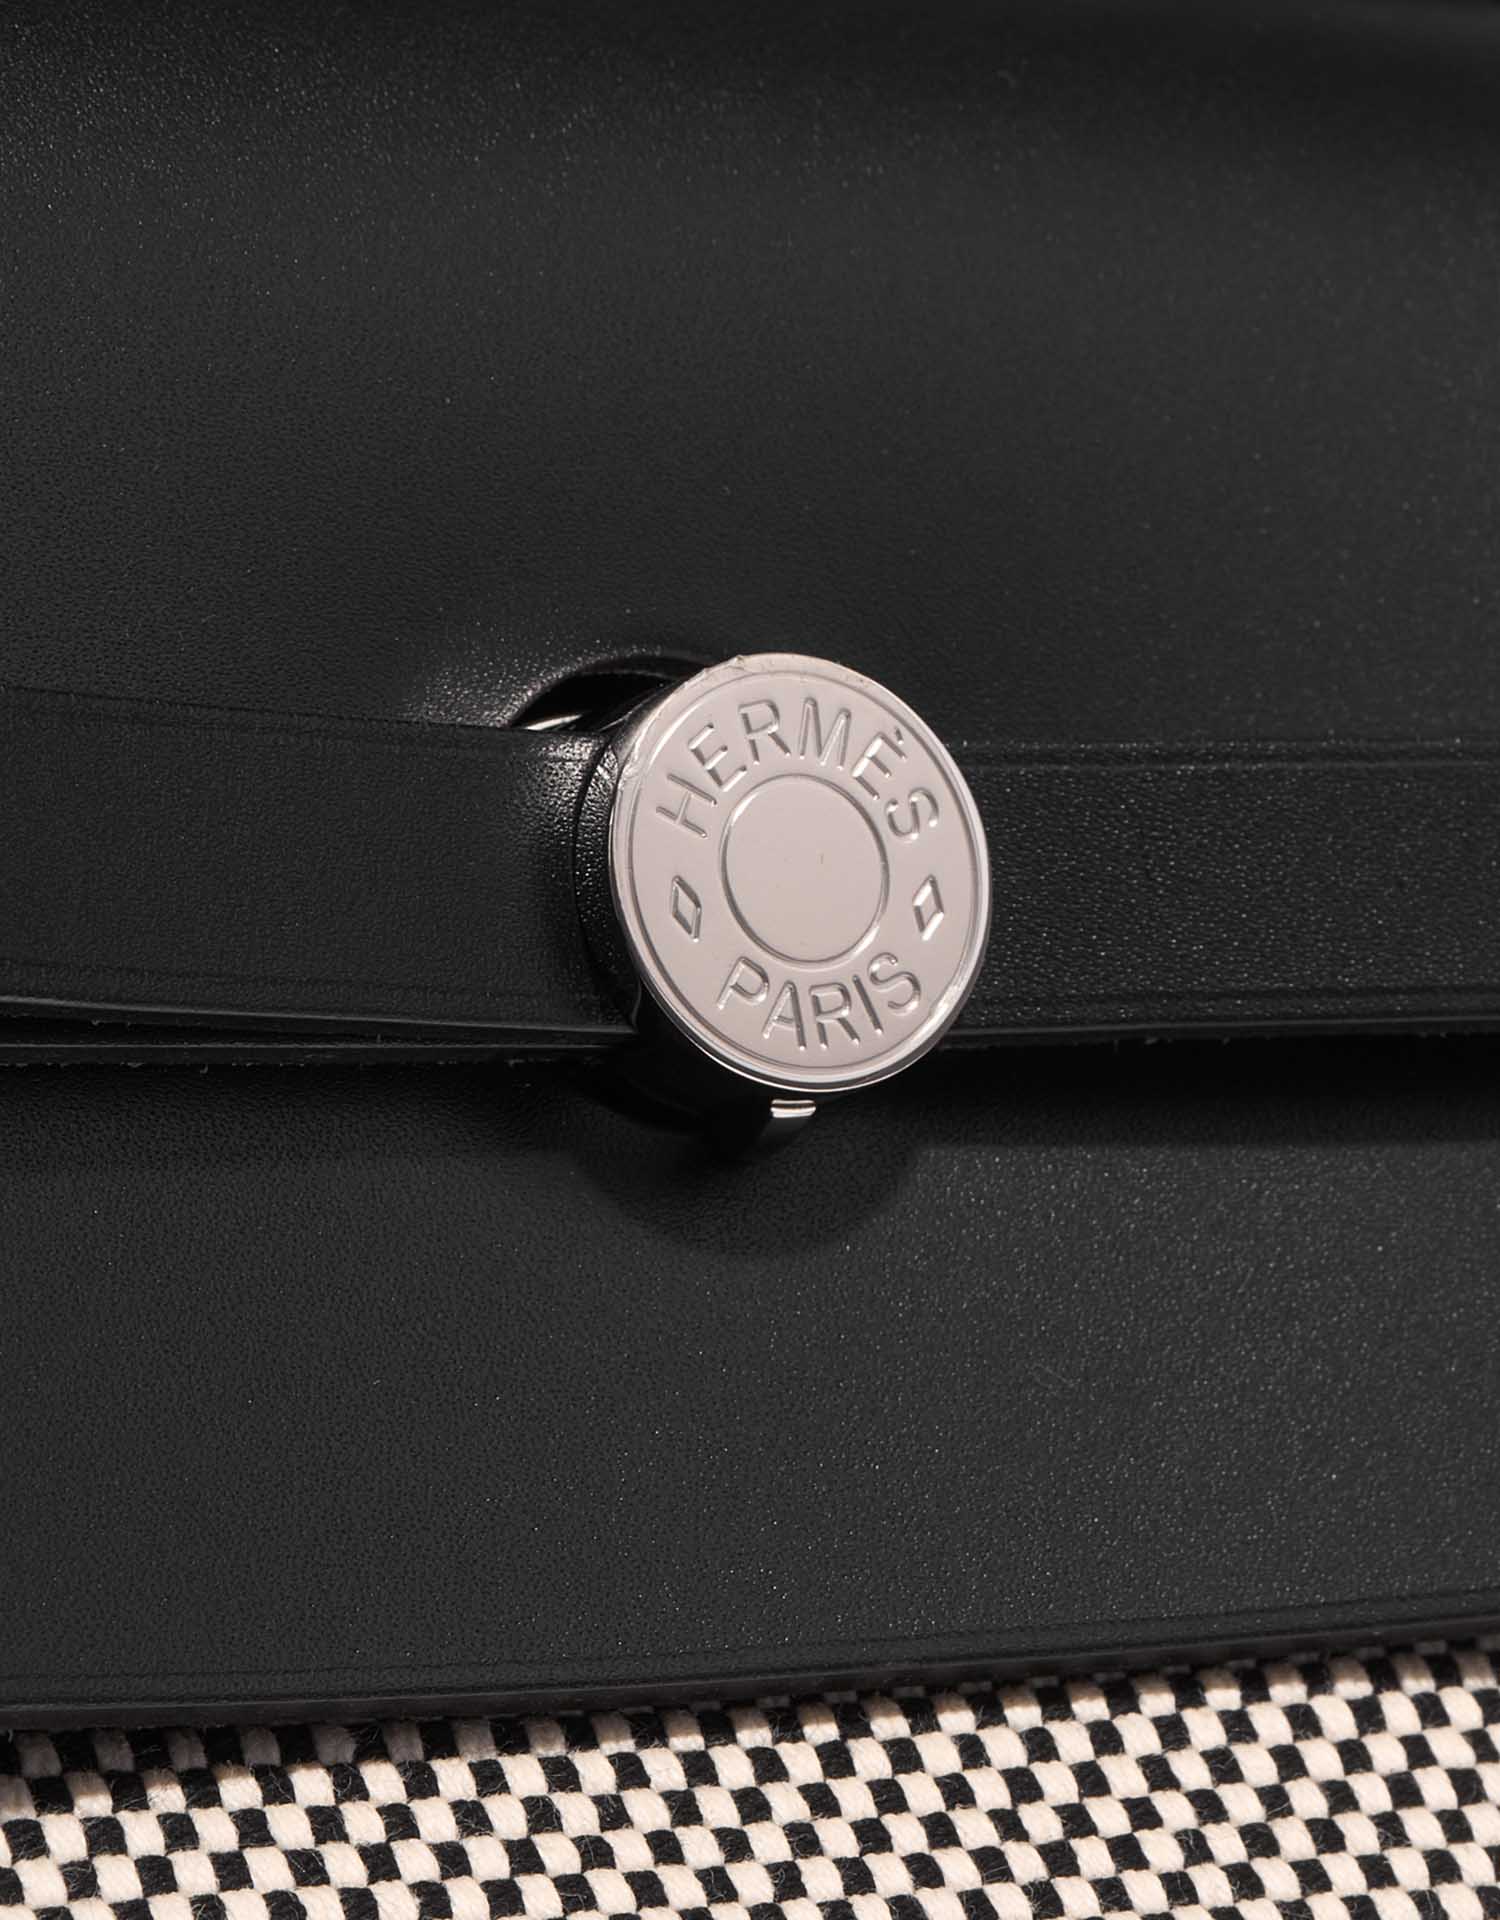 Hermès Herbag 52 Schwarz-Ecru Verschluss-System | Verkaufen Sie Ihre Designer-Tasche auf Saclab.com